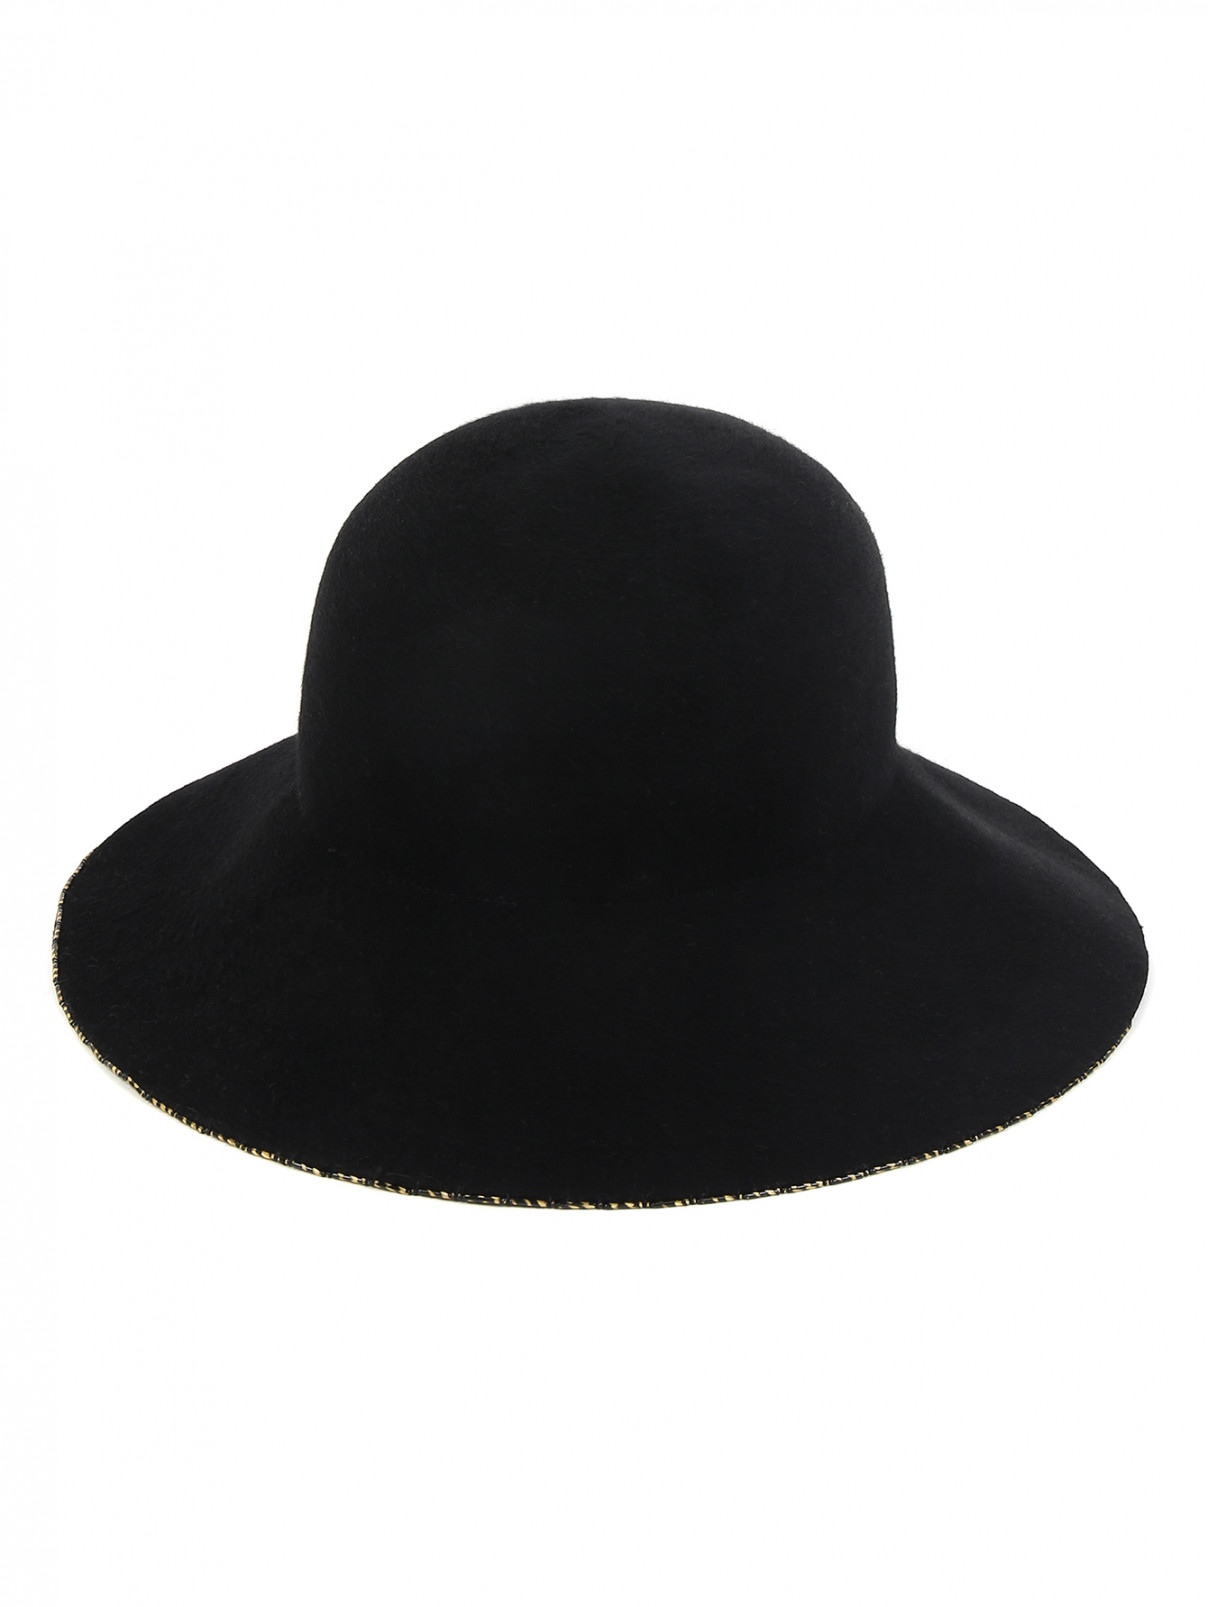 Шляпа из шерсти Eugenia Kim  –  Общий вид  – Цвет:  Черный